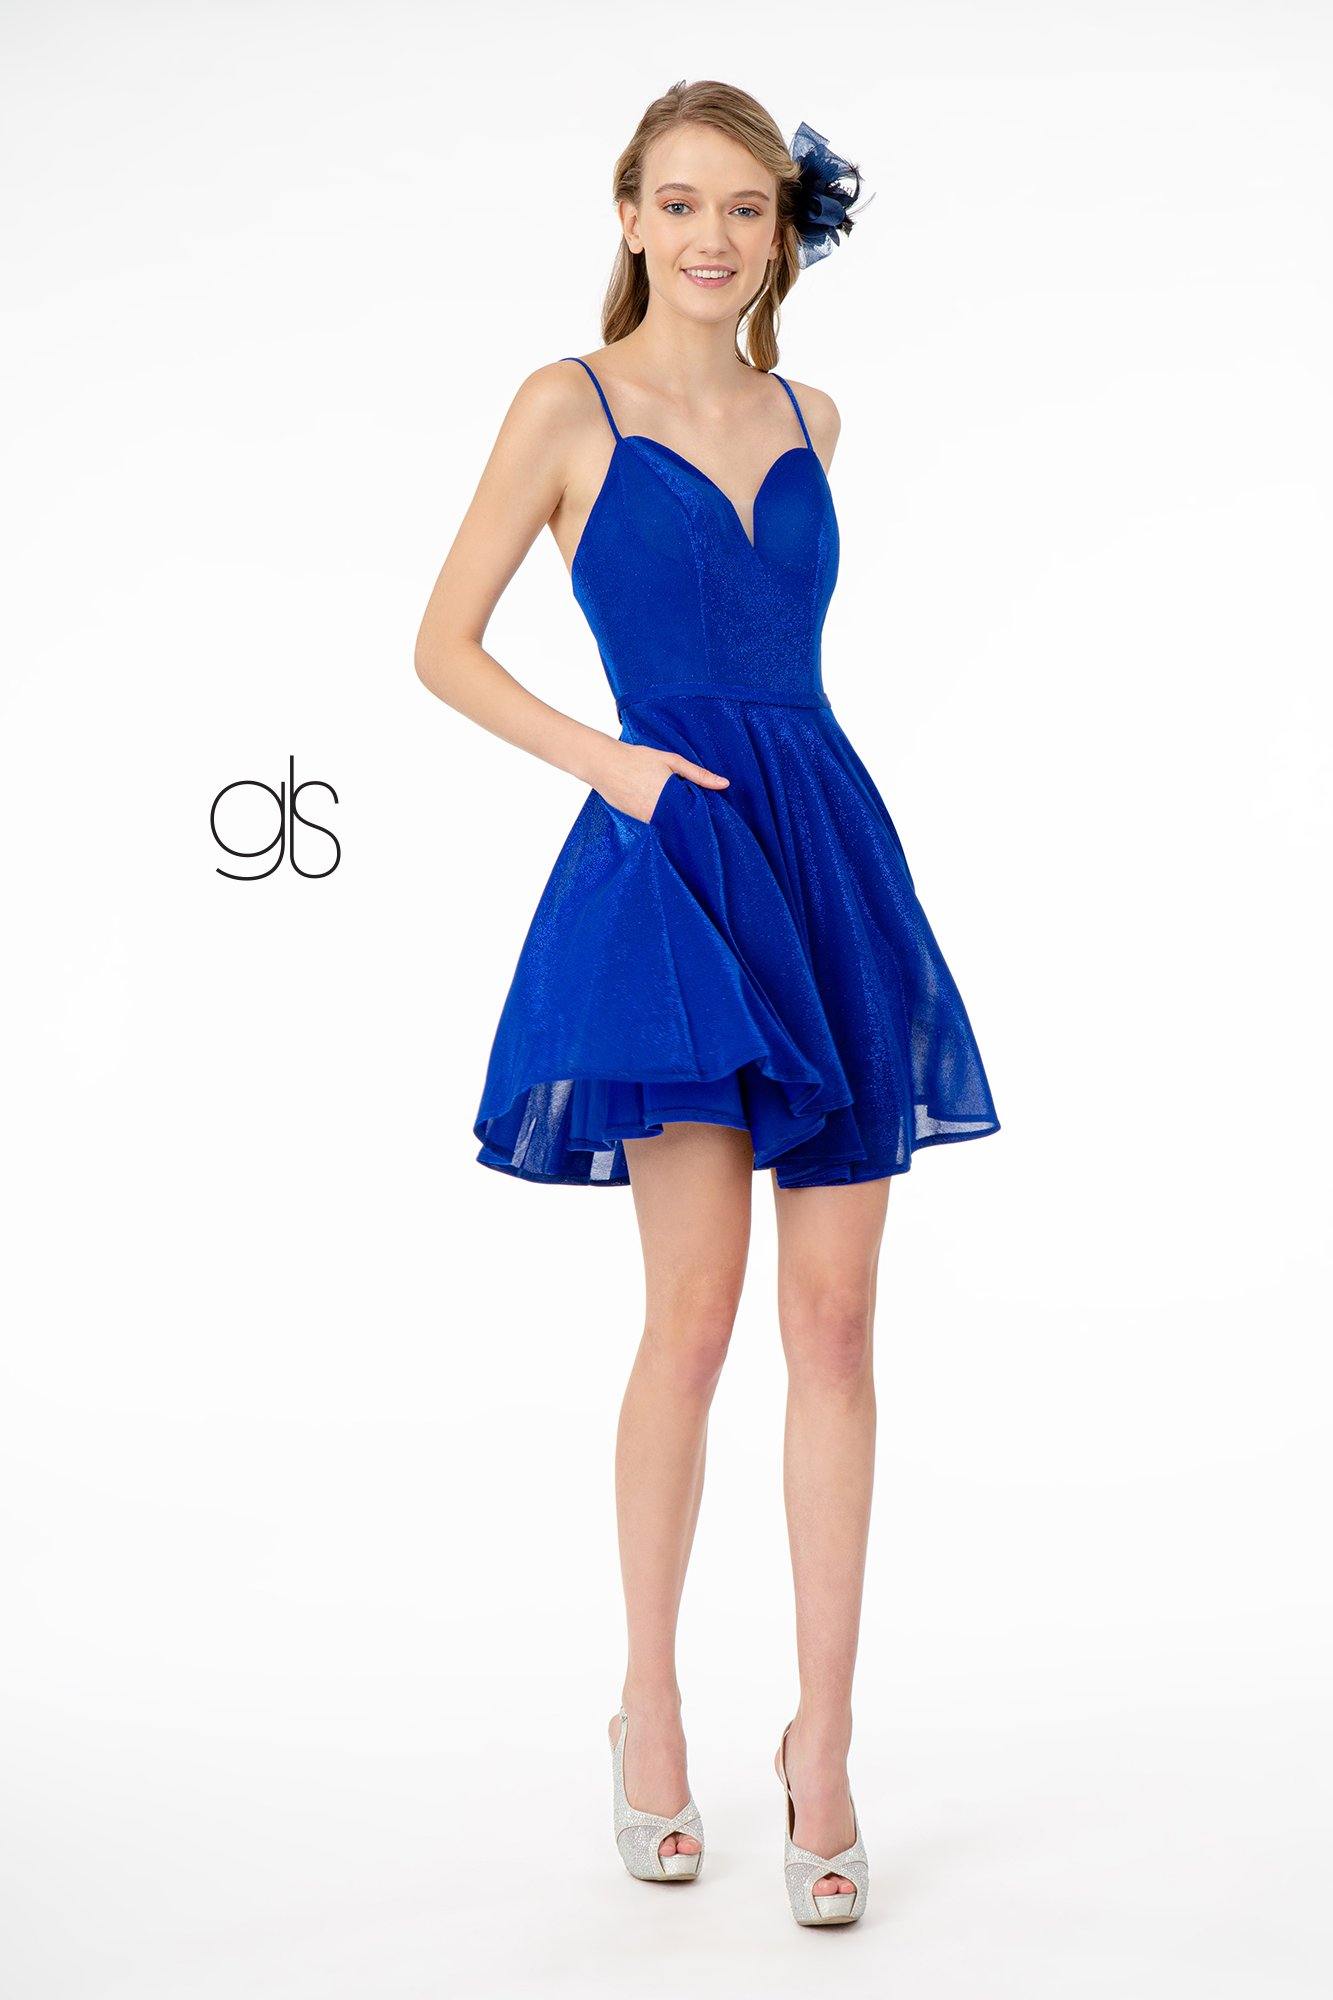 Sweetheart Neckline A-Line Short Dress w/ Pocket - The Dress Outlet Elizabeth K